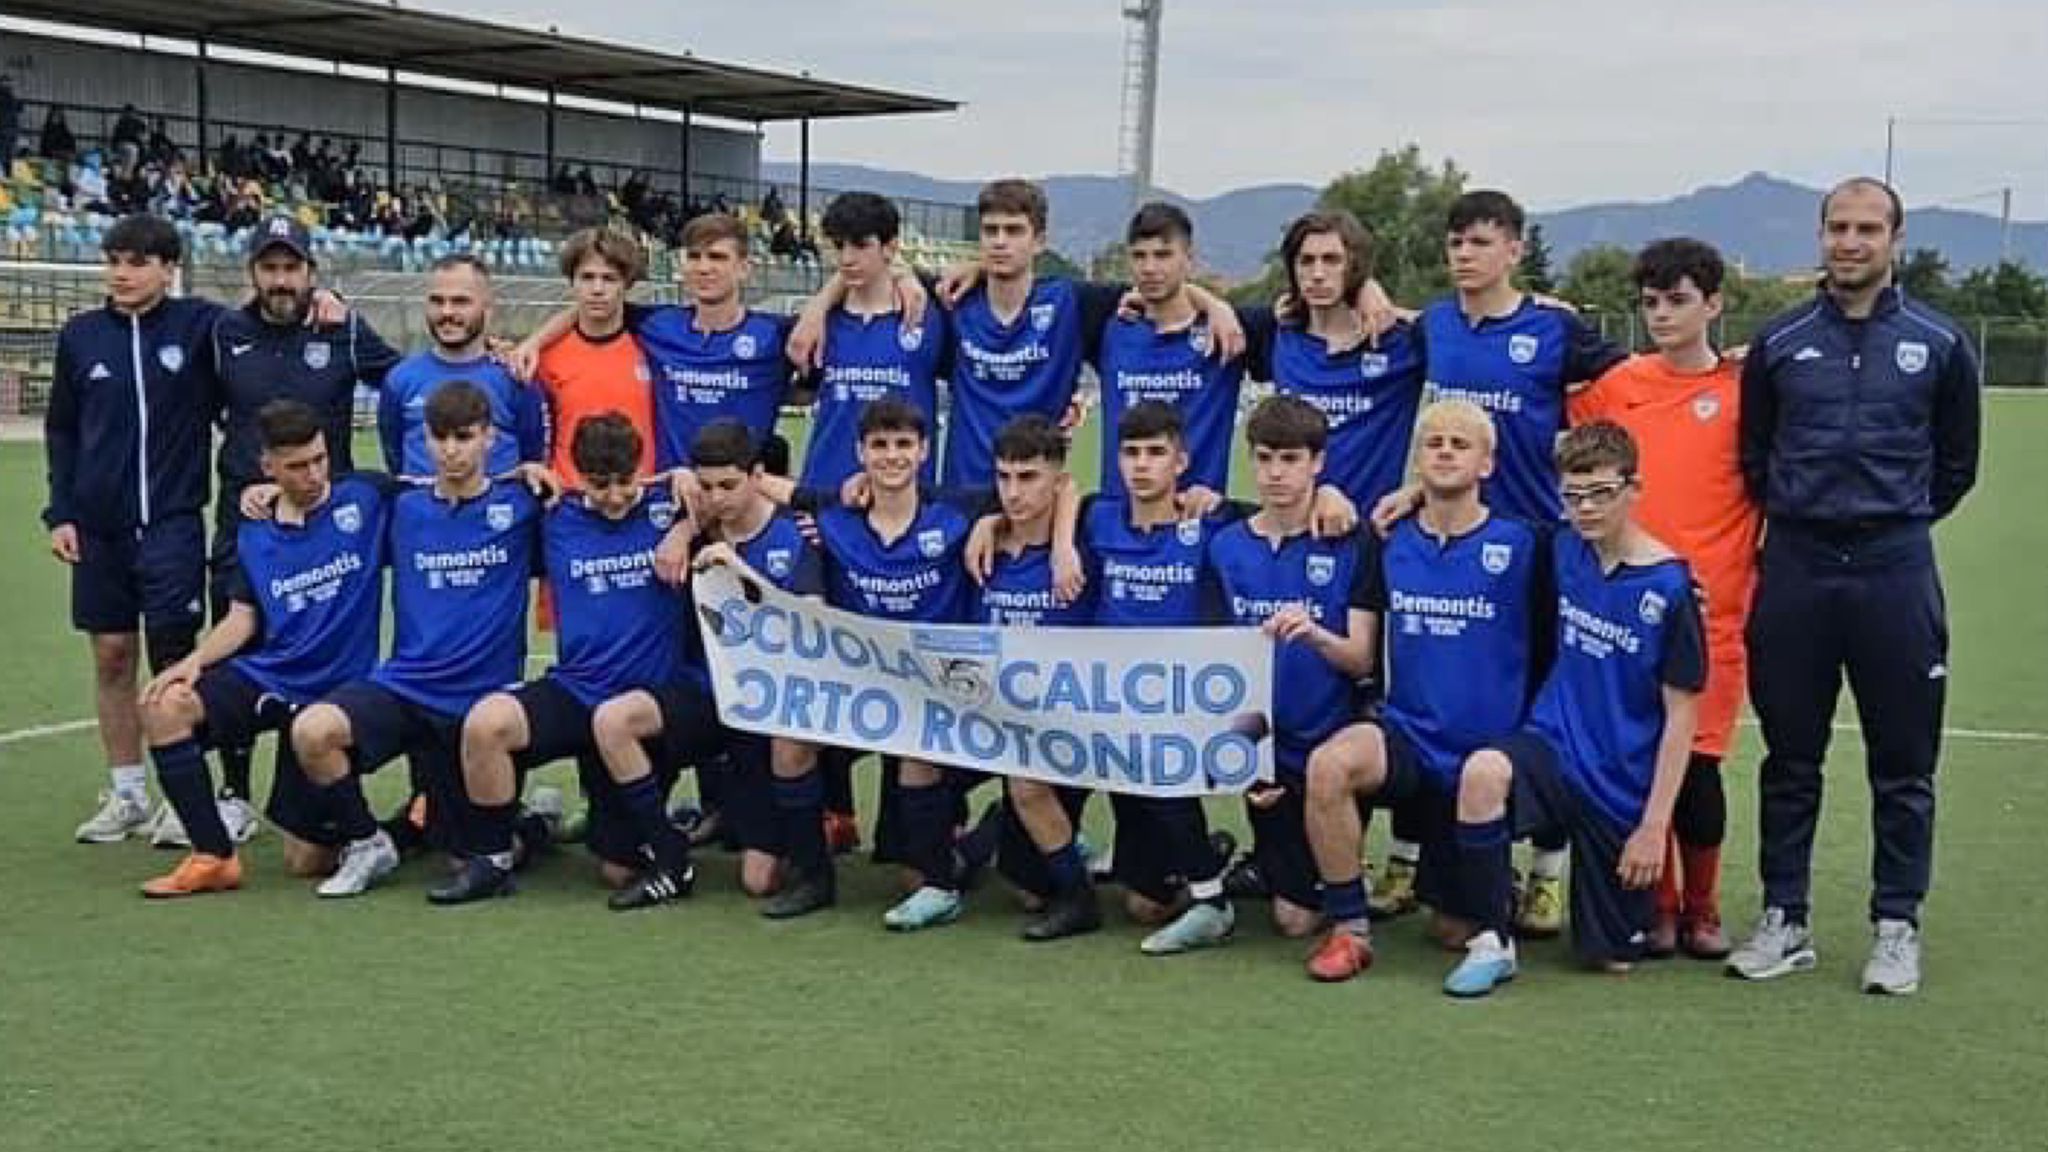 Academy Porto Rotondo: il campionato allievi provinciali termina con una grande vittoria 